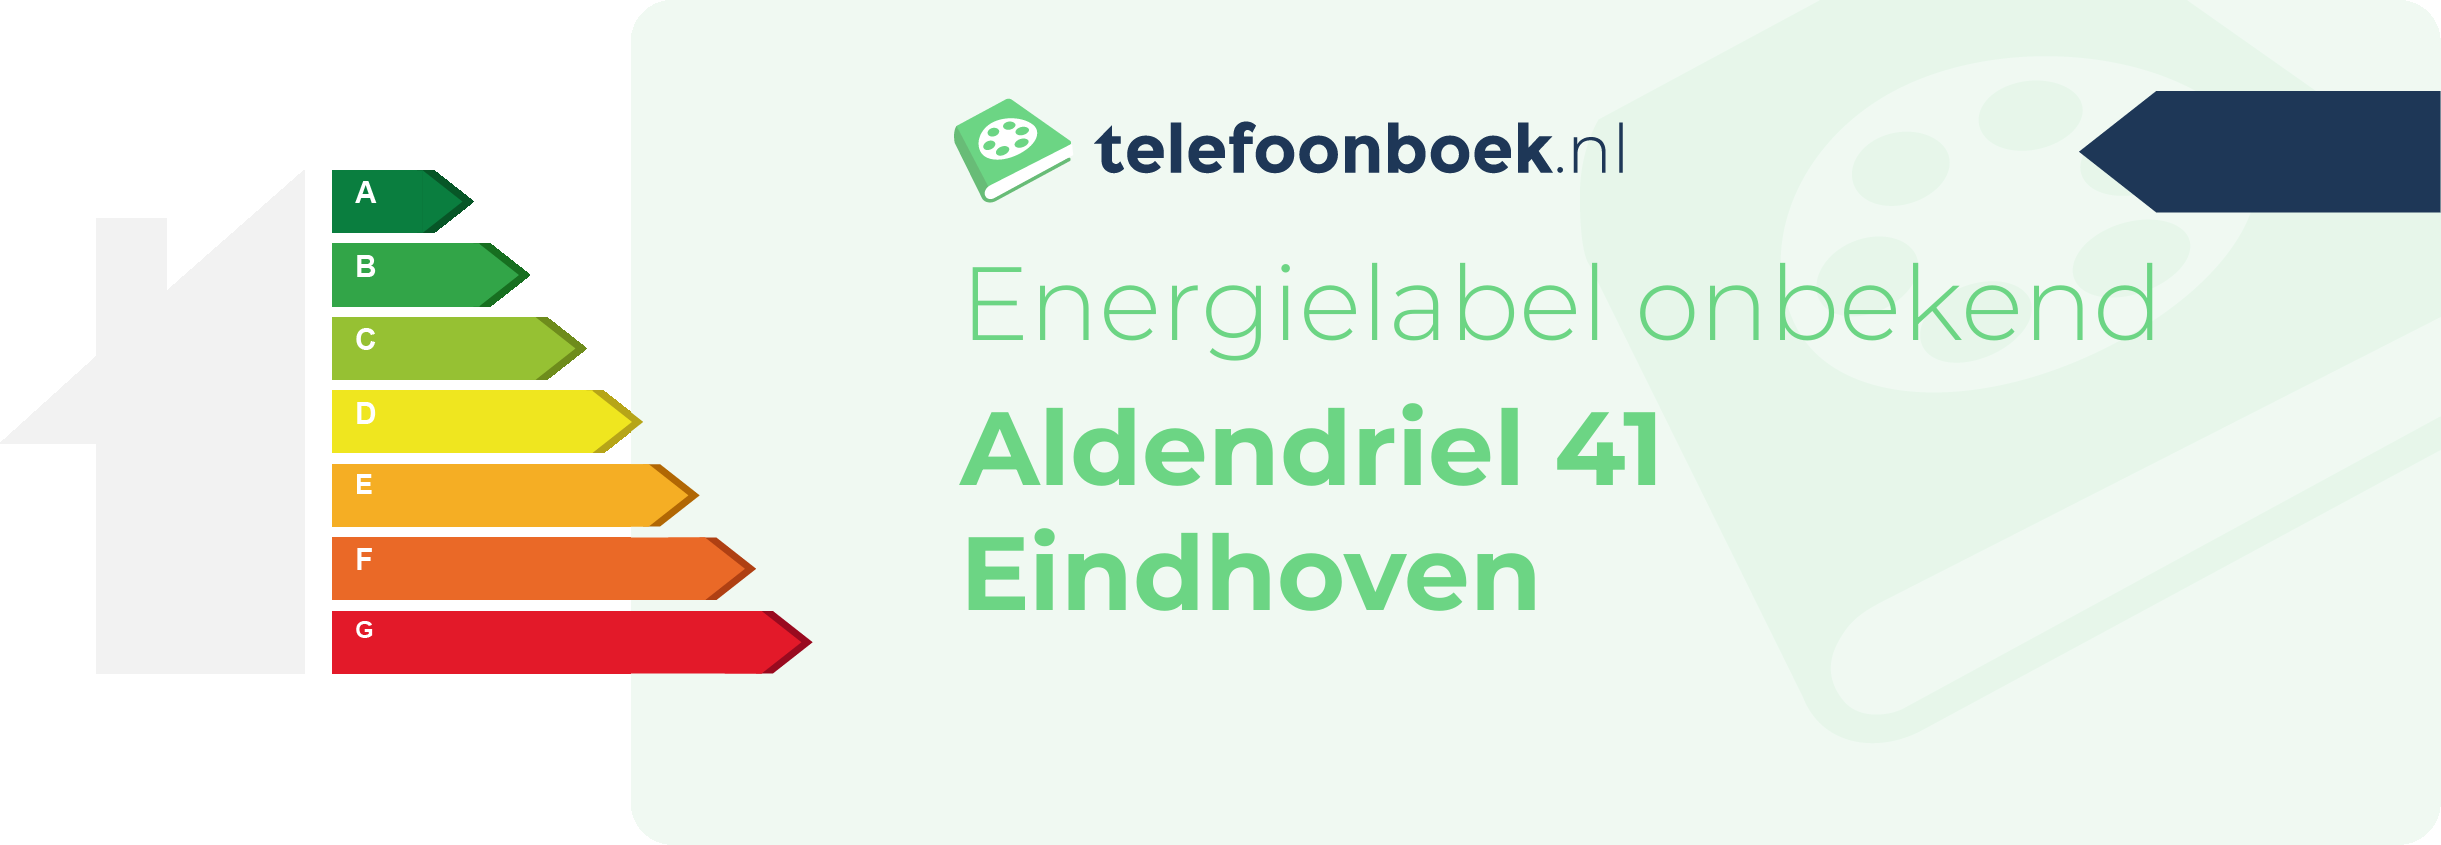 Energielabel Aldendriel 41 Eindhoven